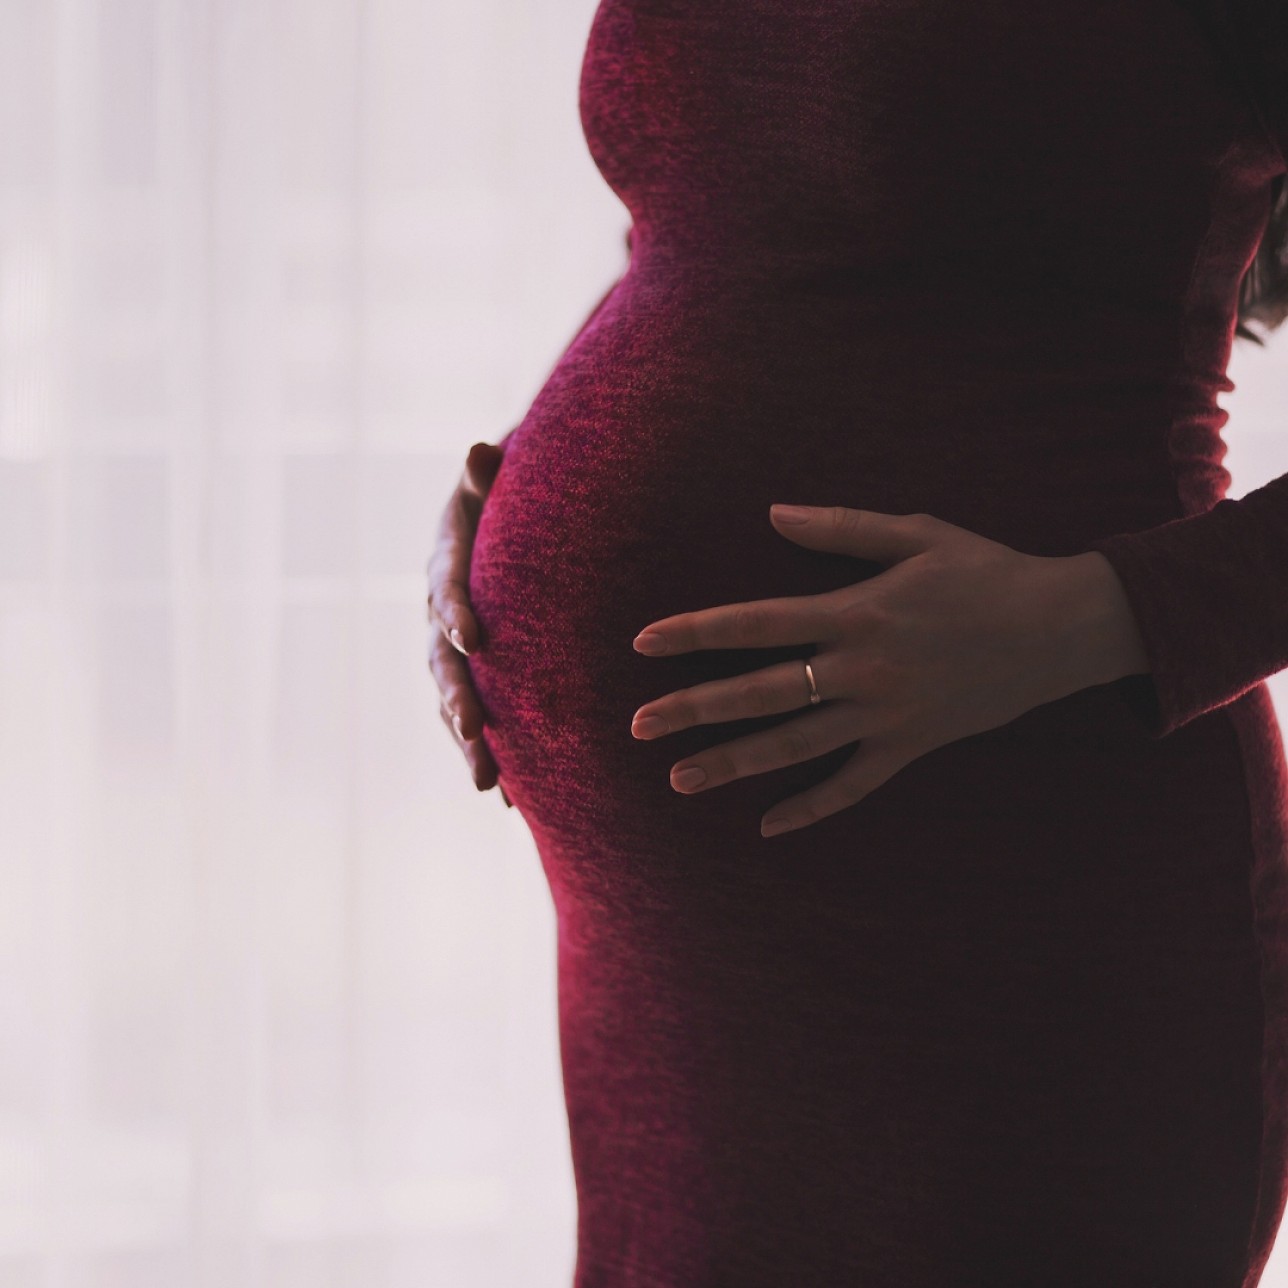 Az amalgám tömés káros hatása várandós nőknél